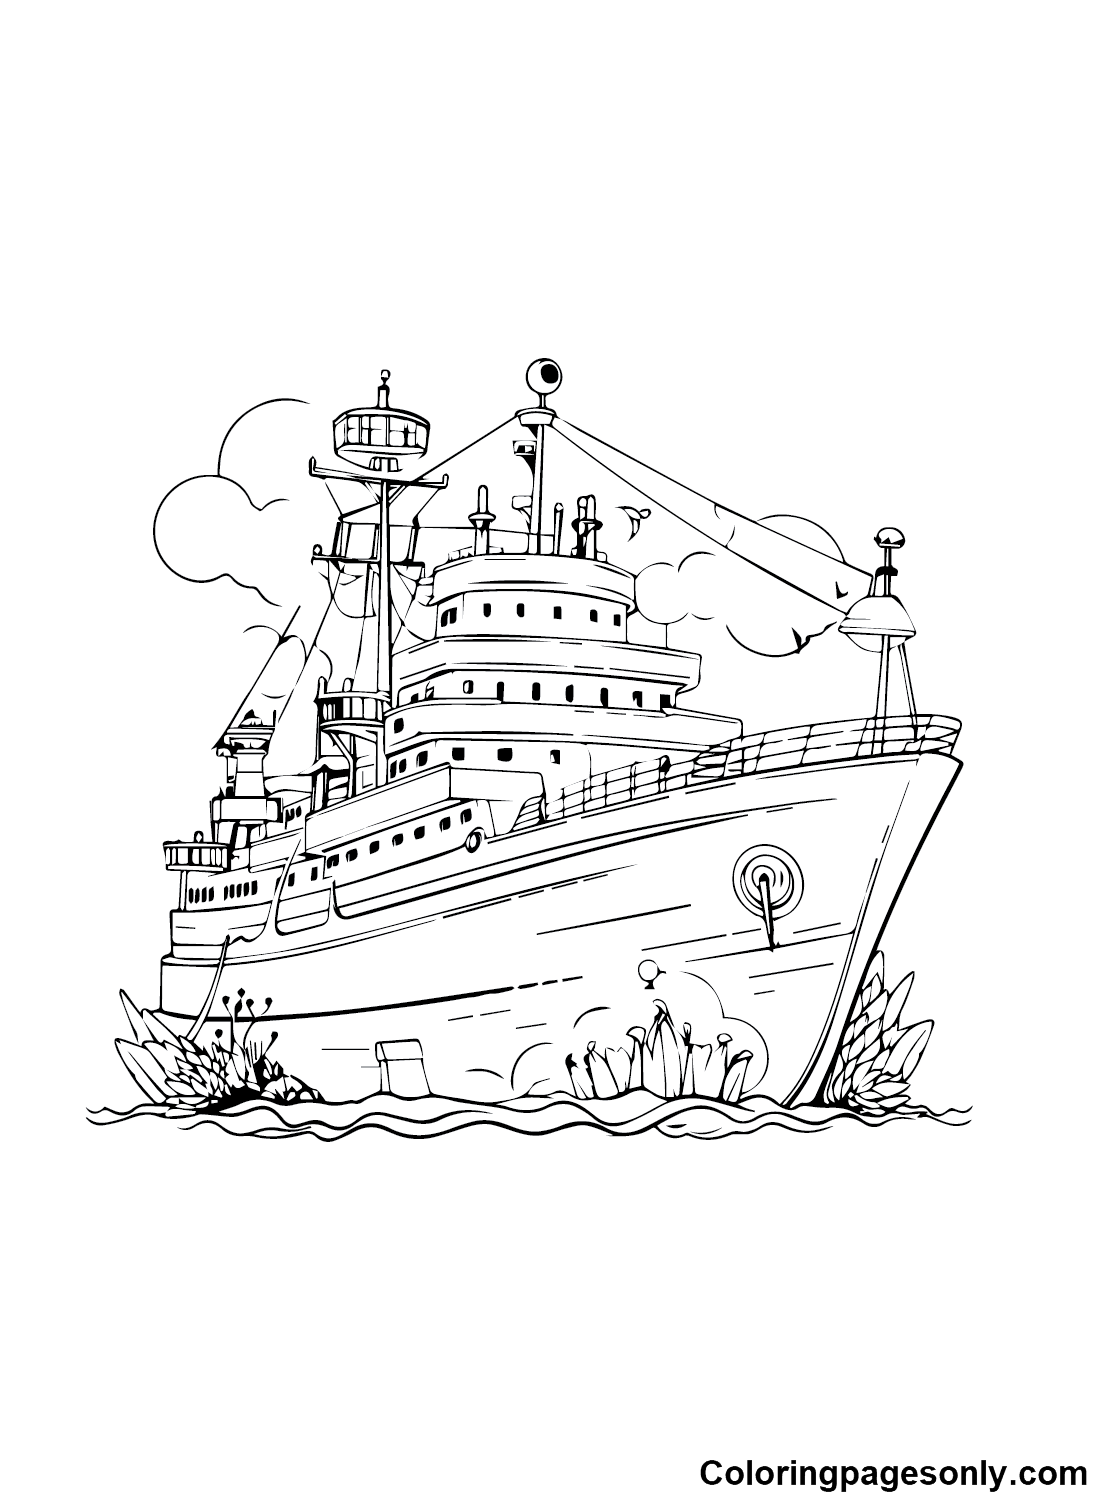 Бесплатные изображения корабля с корабля